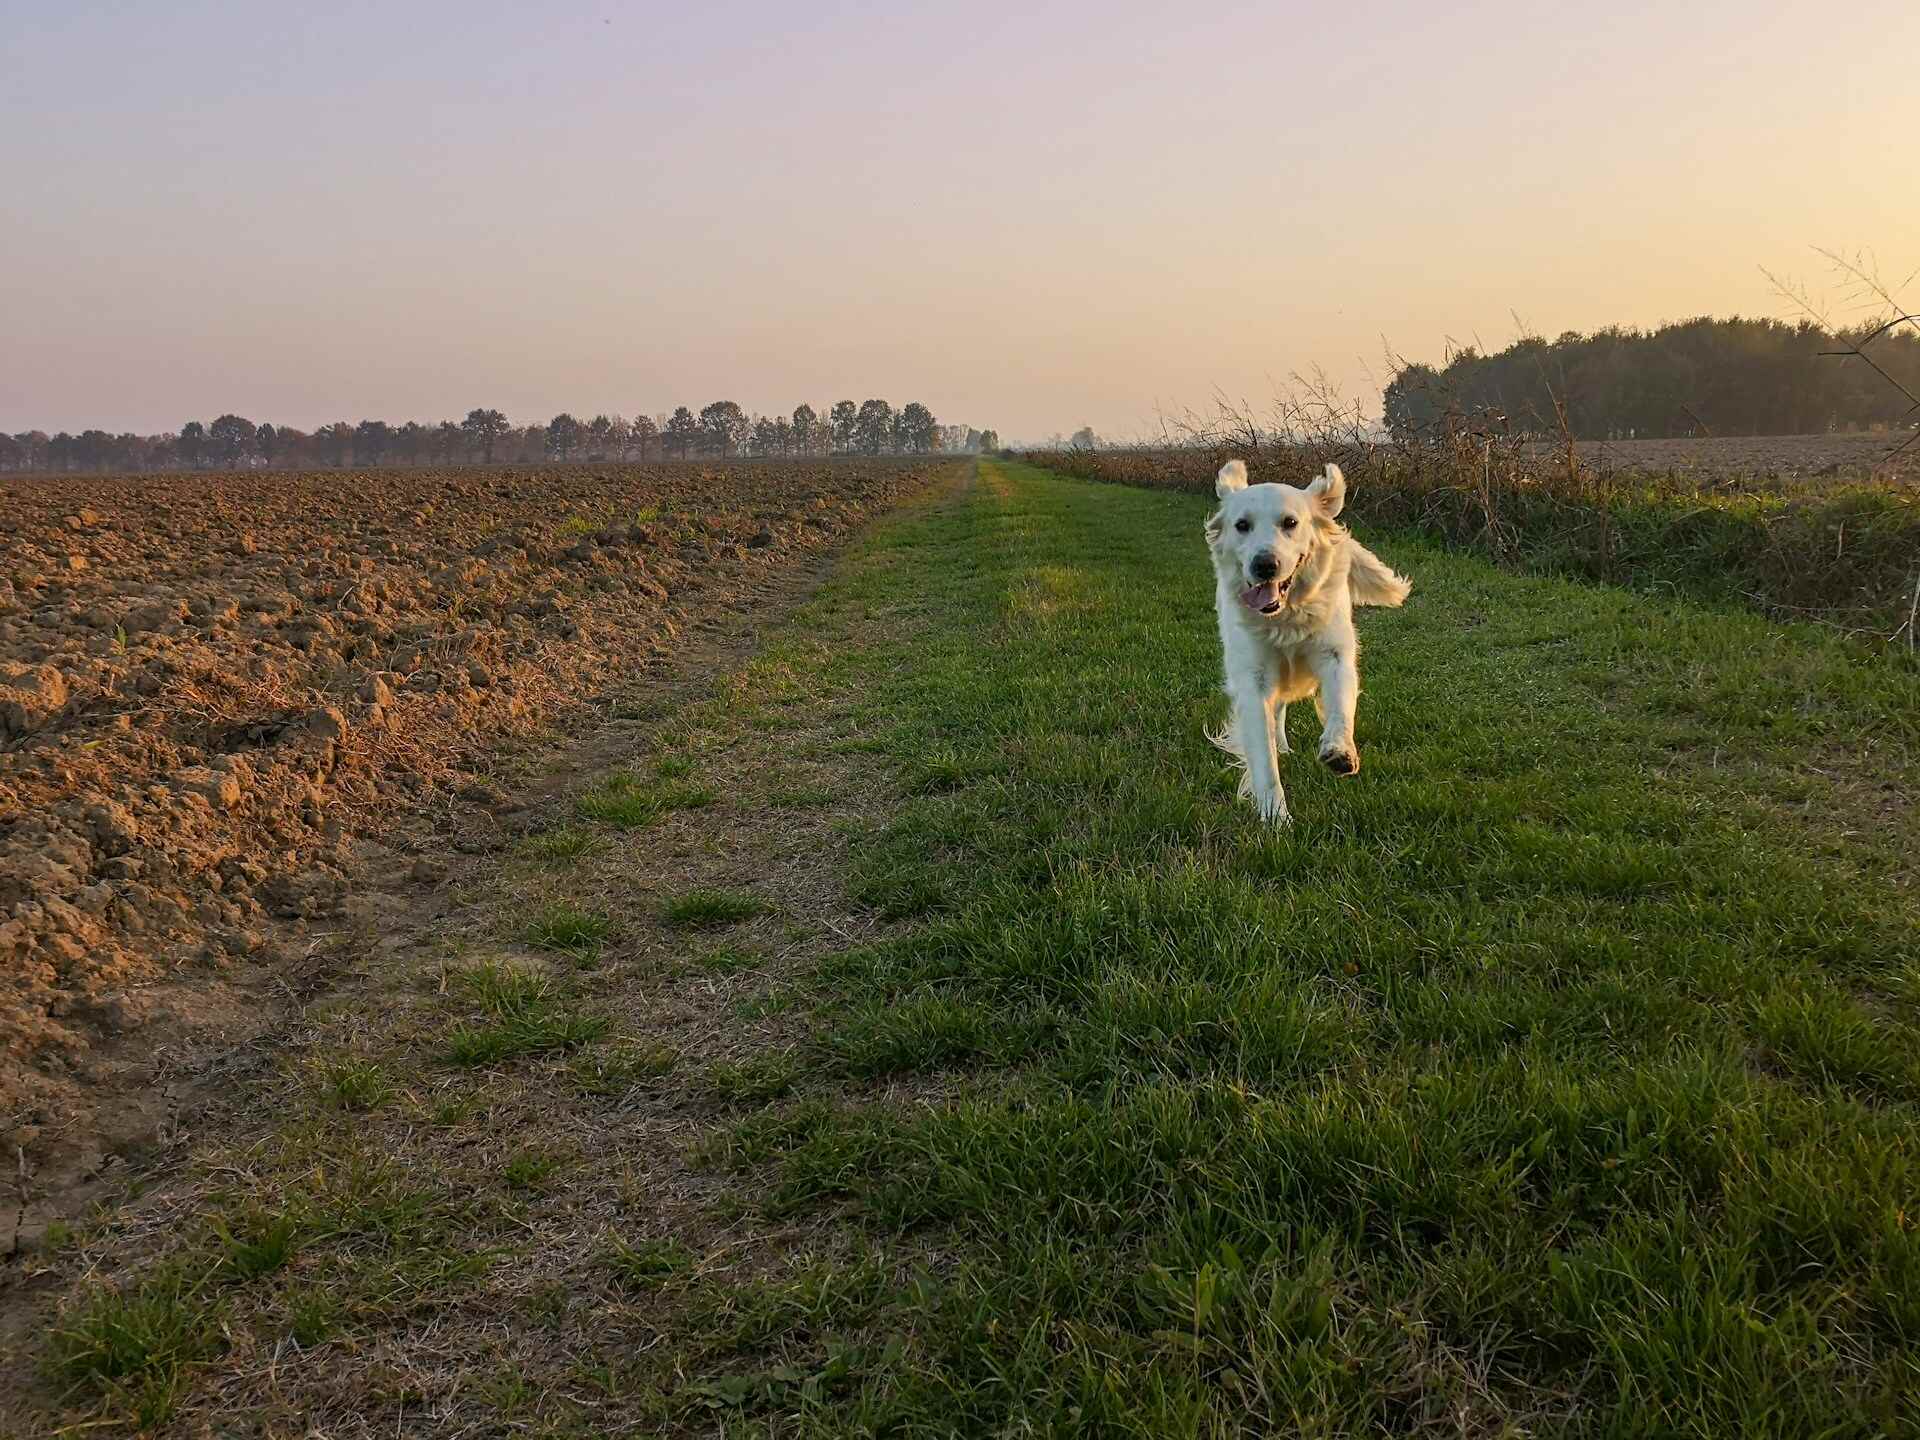 A dog running through an open field